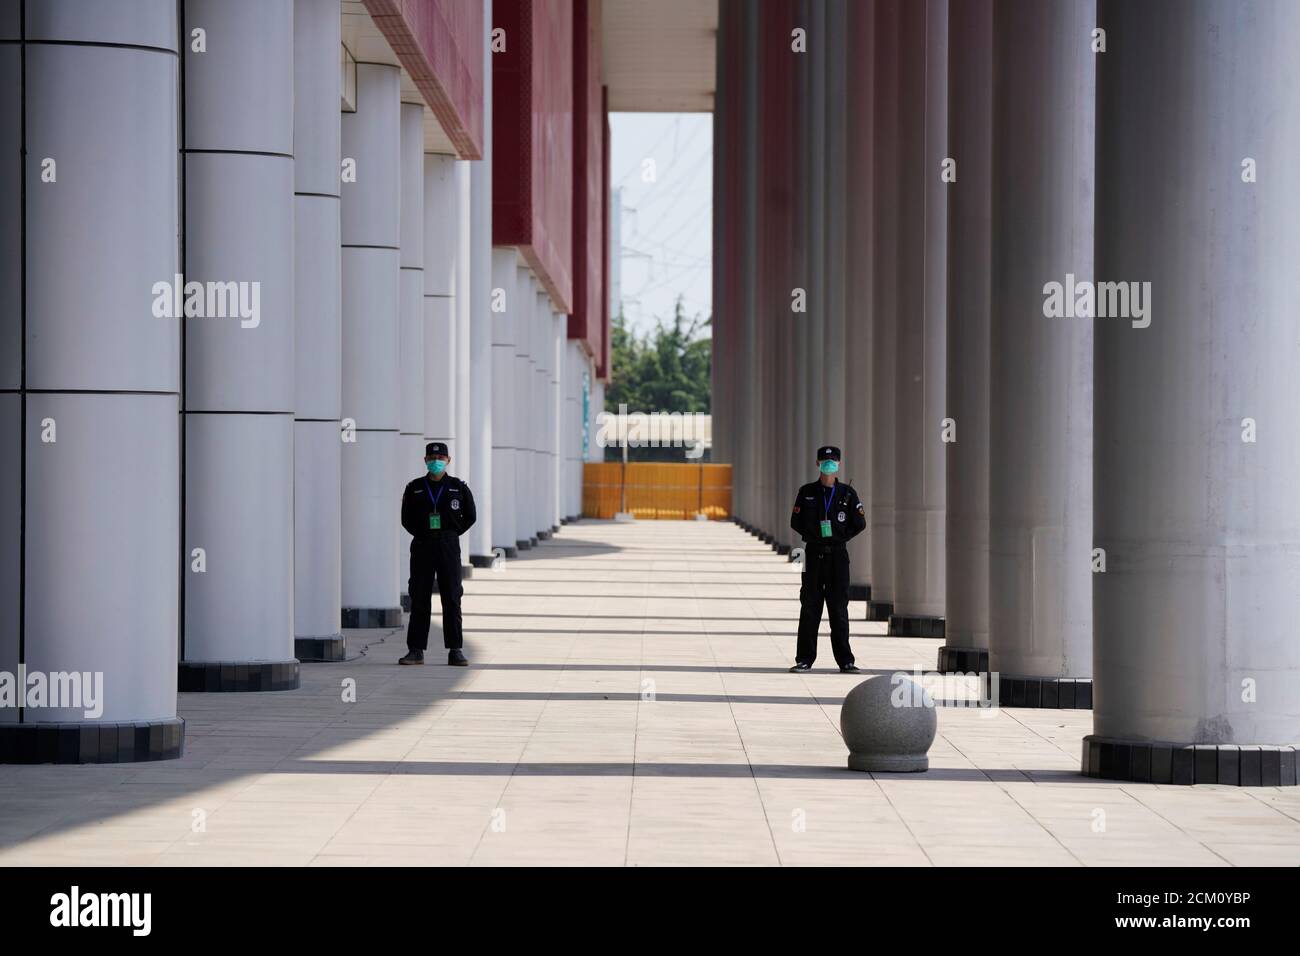 Le personnel de sécurité garde devant un centre de congrès qui a été utilisé comme hôpital de fortune pour traiter les patients atteints de la maladie du coronavirus (COVID-19), à Wuhan, province de Hubei, Chine le 9 avril 2020. REUTERS/Aly Song Banque D'Images